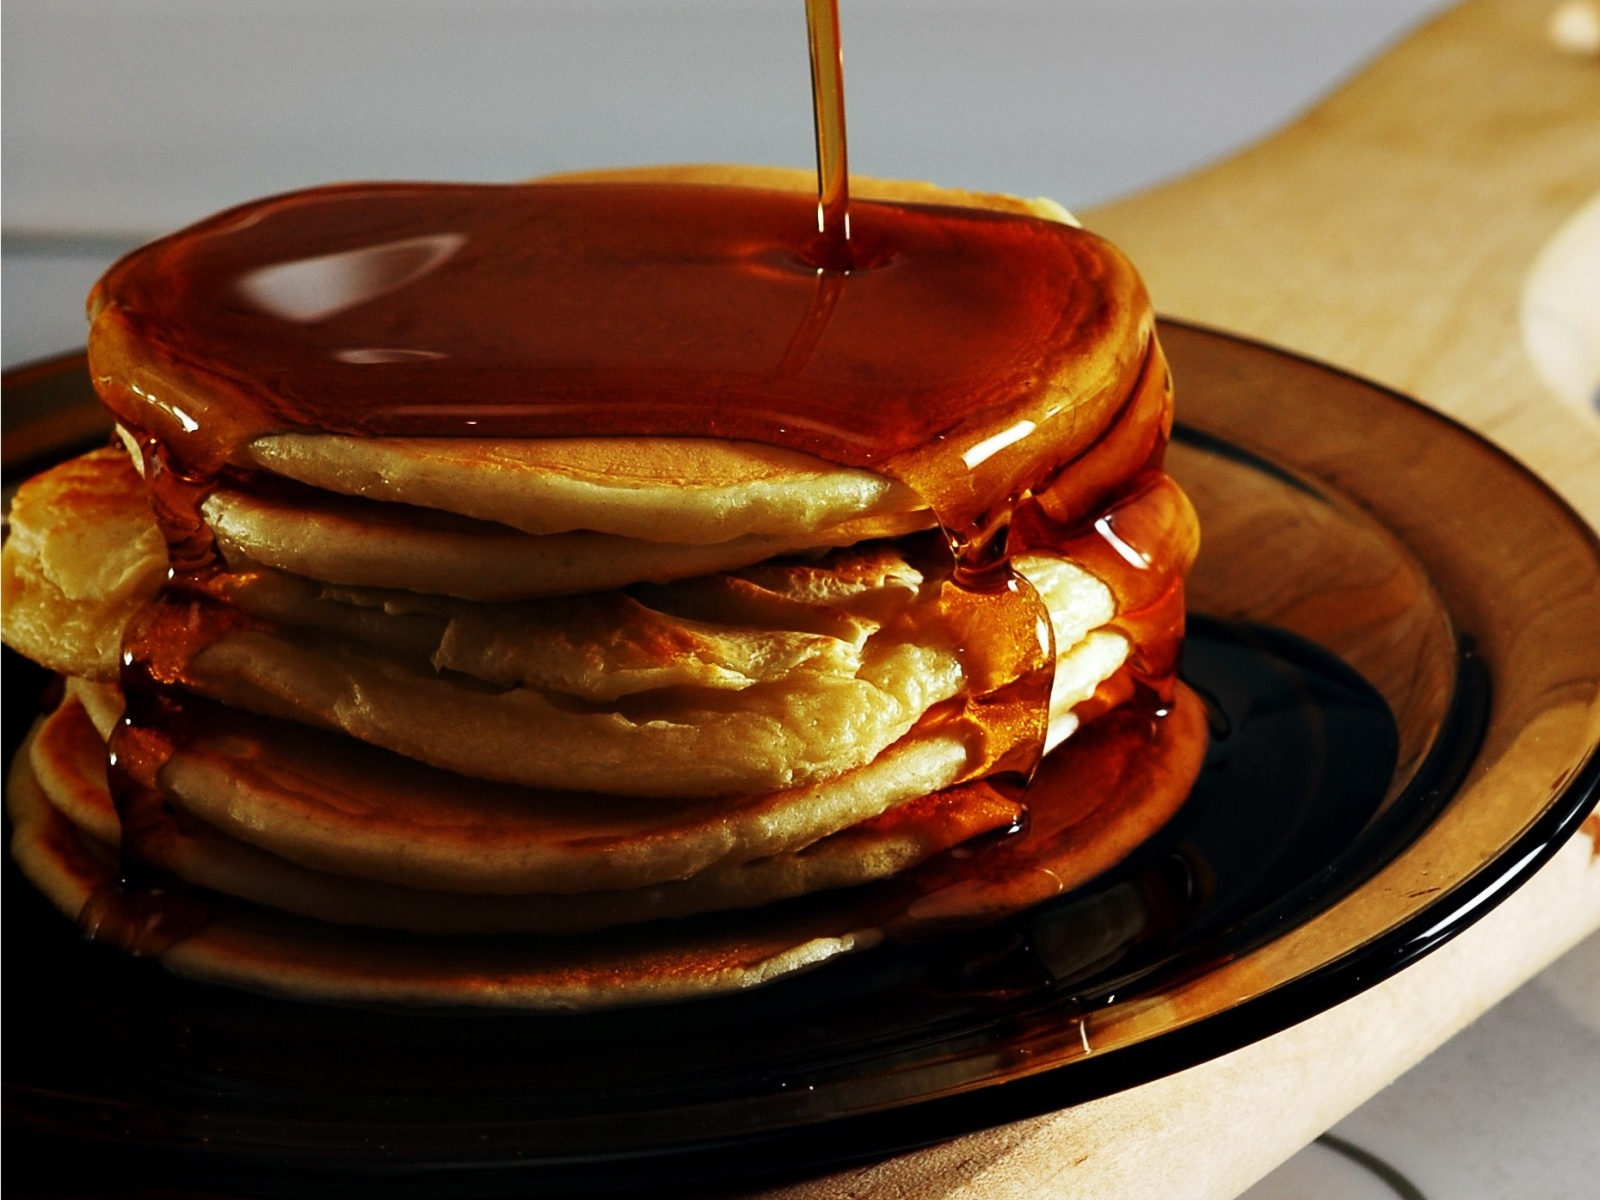 Free download wallpaper Food, Pancake on your PC desktop